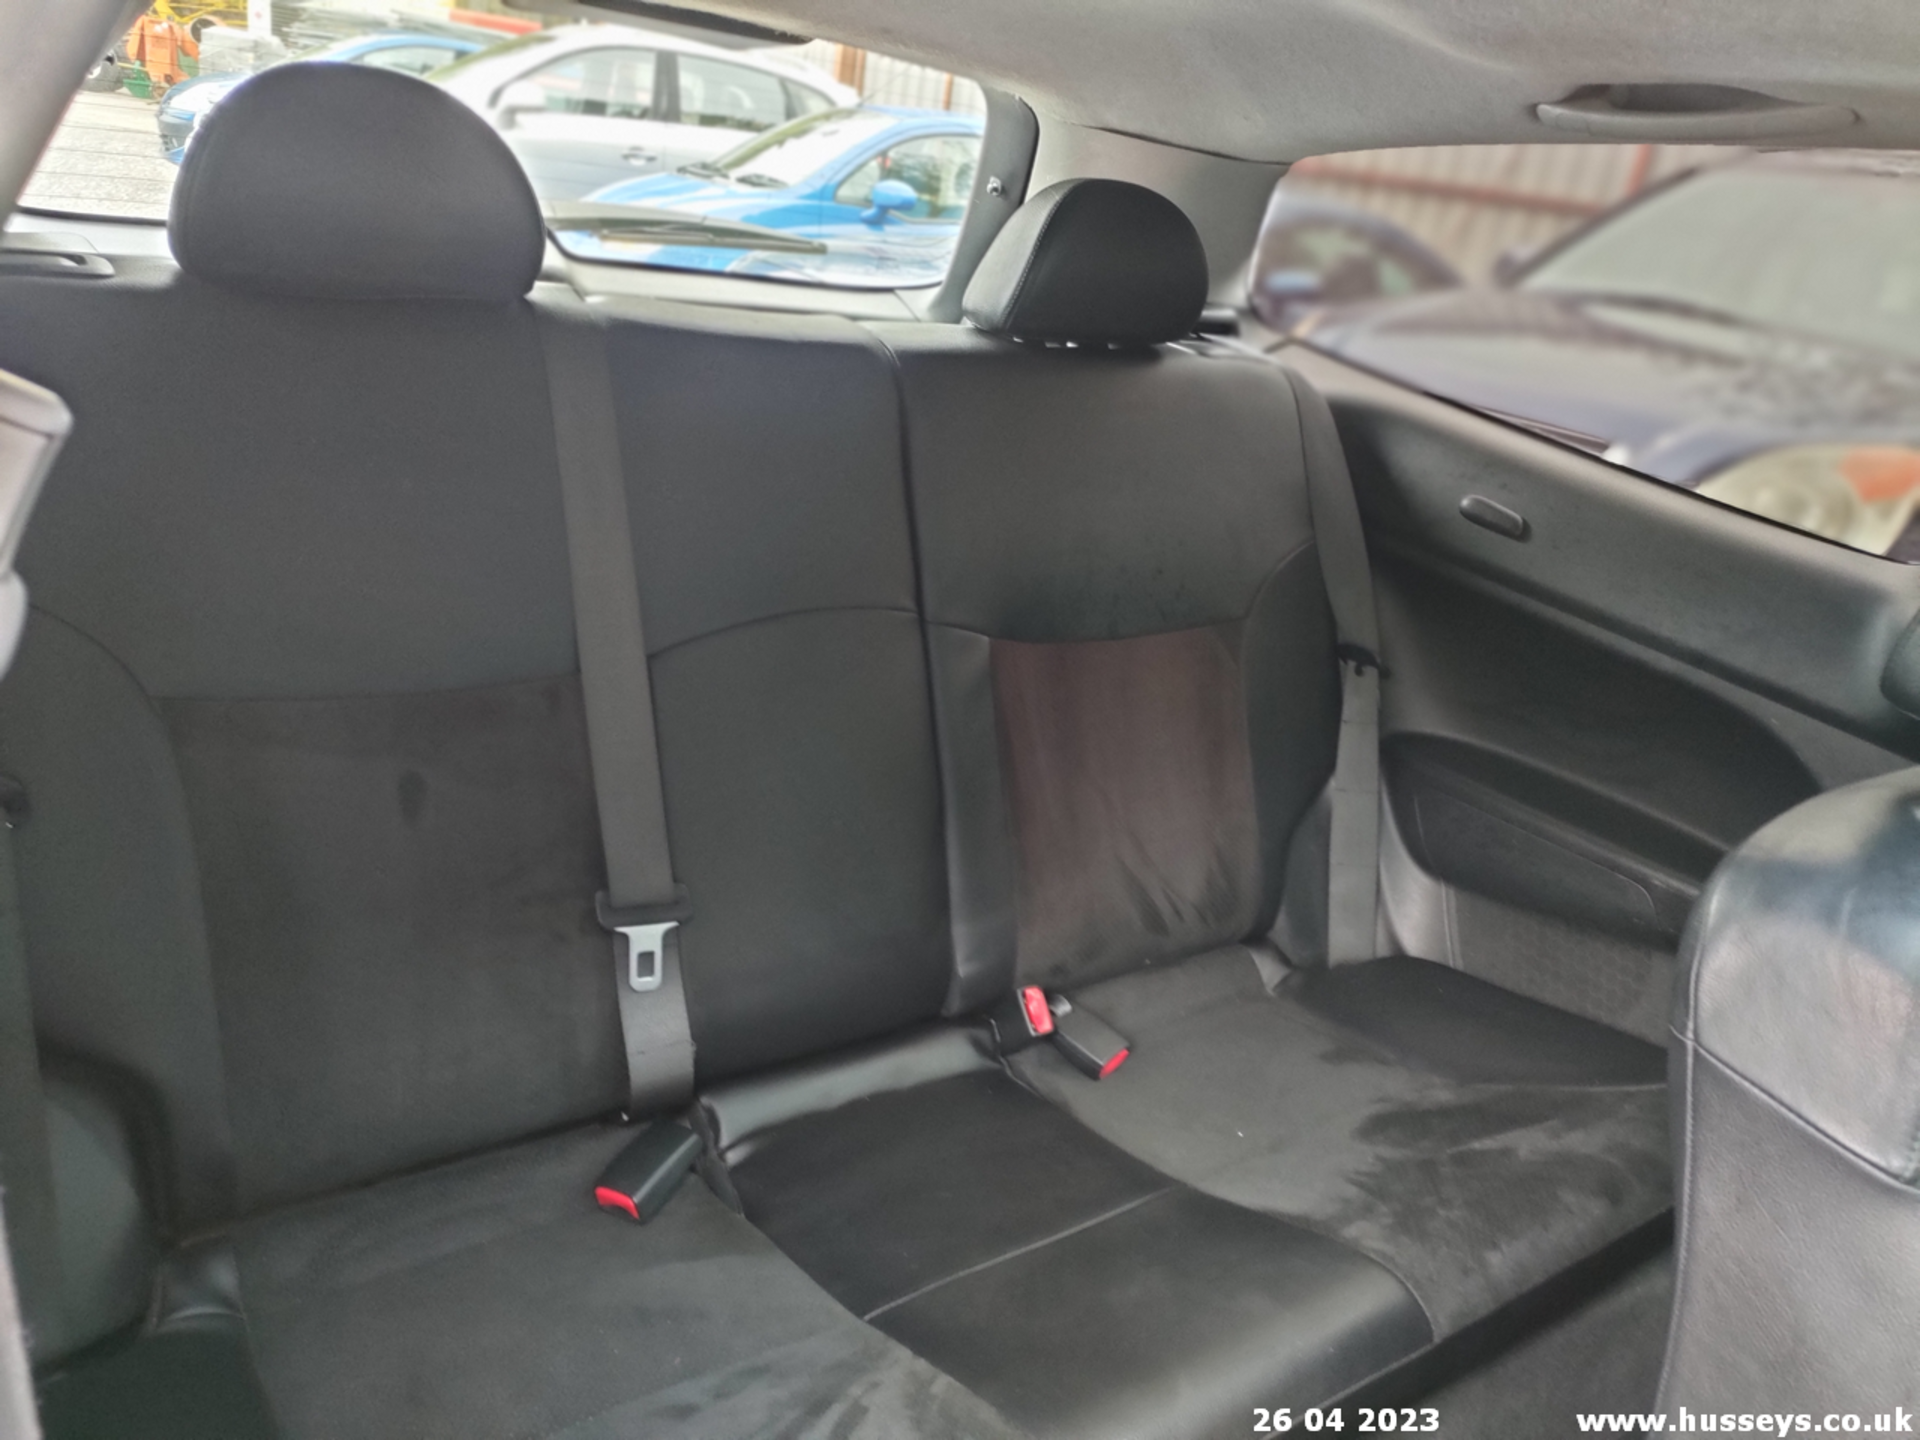 02/51 HONDA CIVIC VTEC SE SPORT - 1590cc 3dr Hatchback (Black) - Image 29 of 30